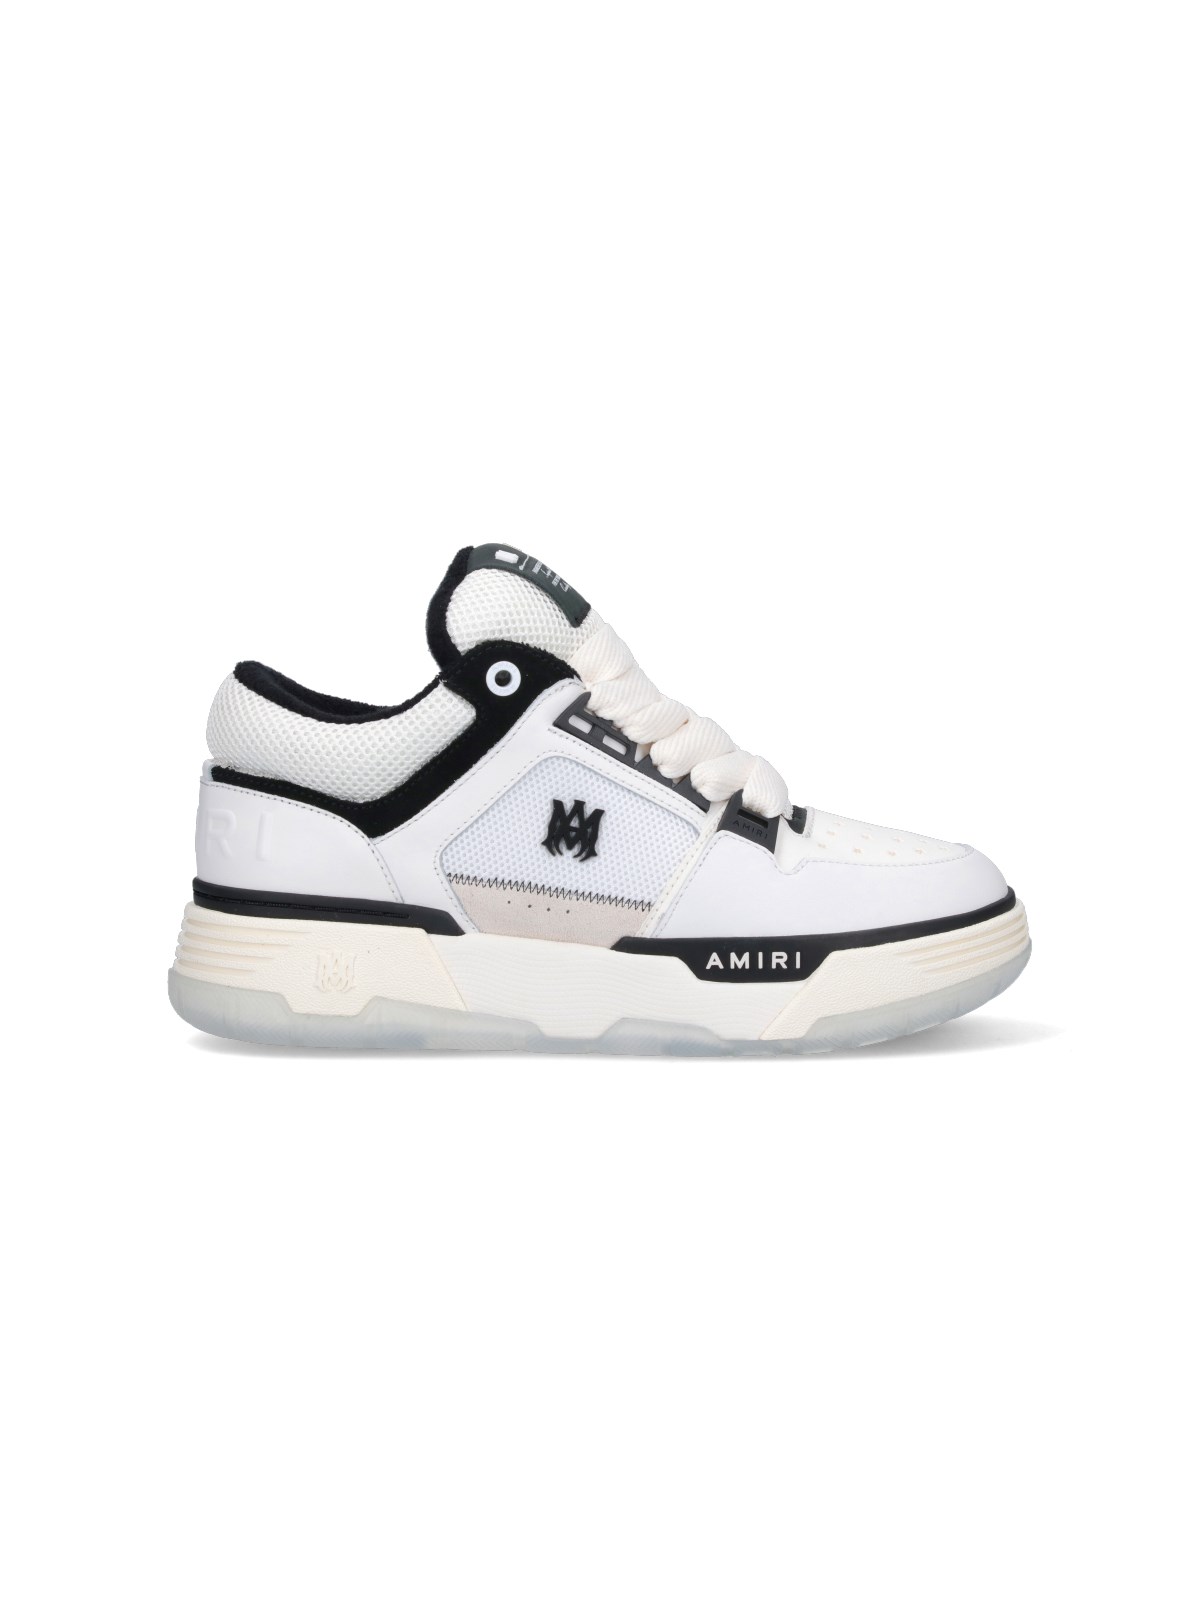 Amiri "ma-1" Sneakers In White